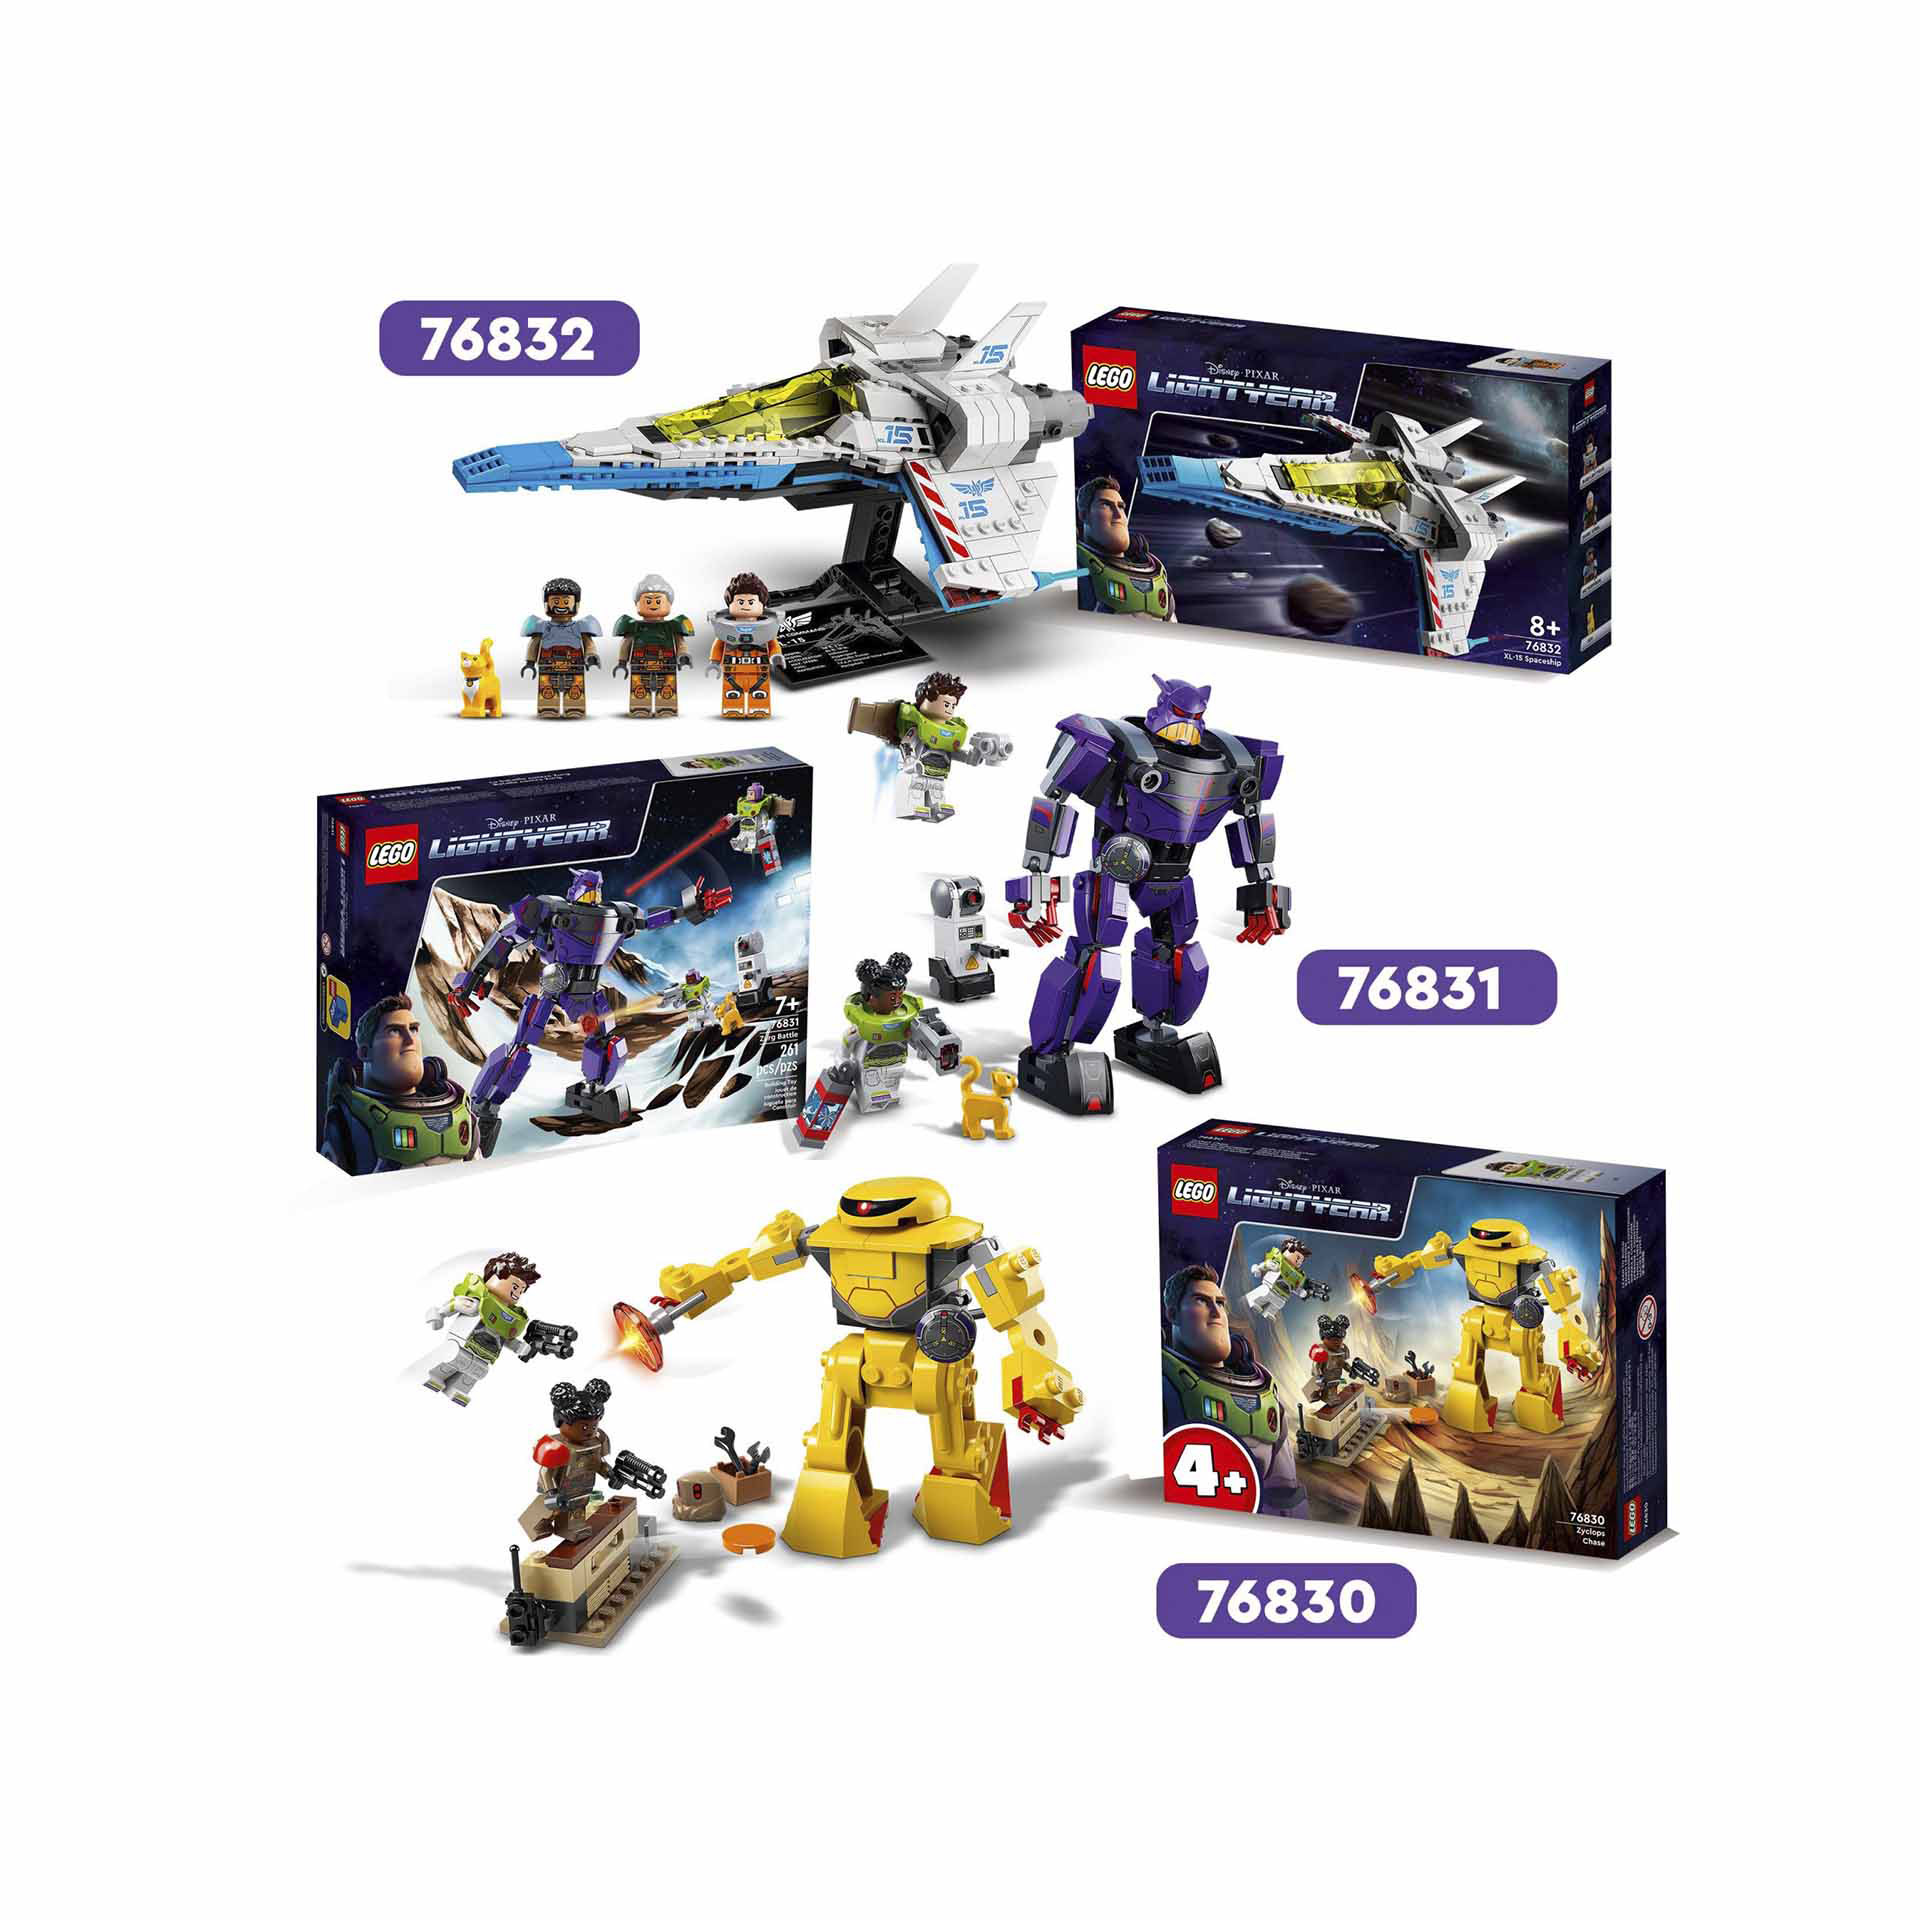 LEGO Lightyear Disney e Pixar L'Inseguimento di Zyclops, Giochi per Bambini dai 76830, , large